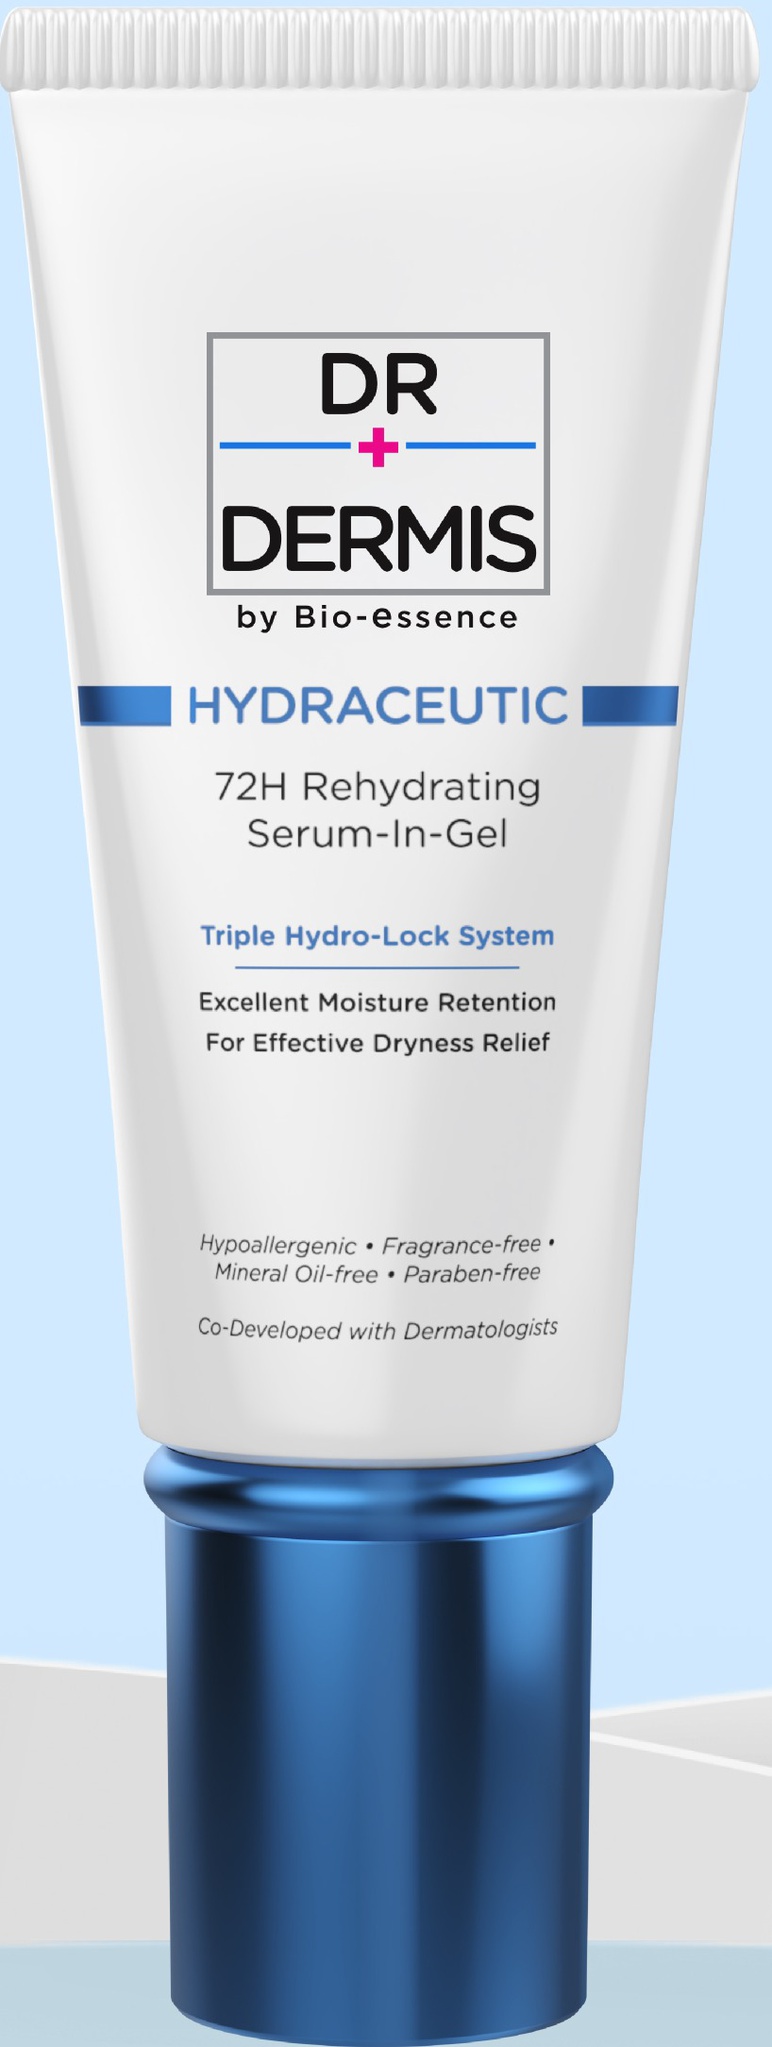 DR DERMIS Hydraceutic 72h Rehydrating Serum-In-Gel